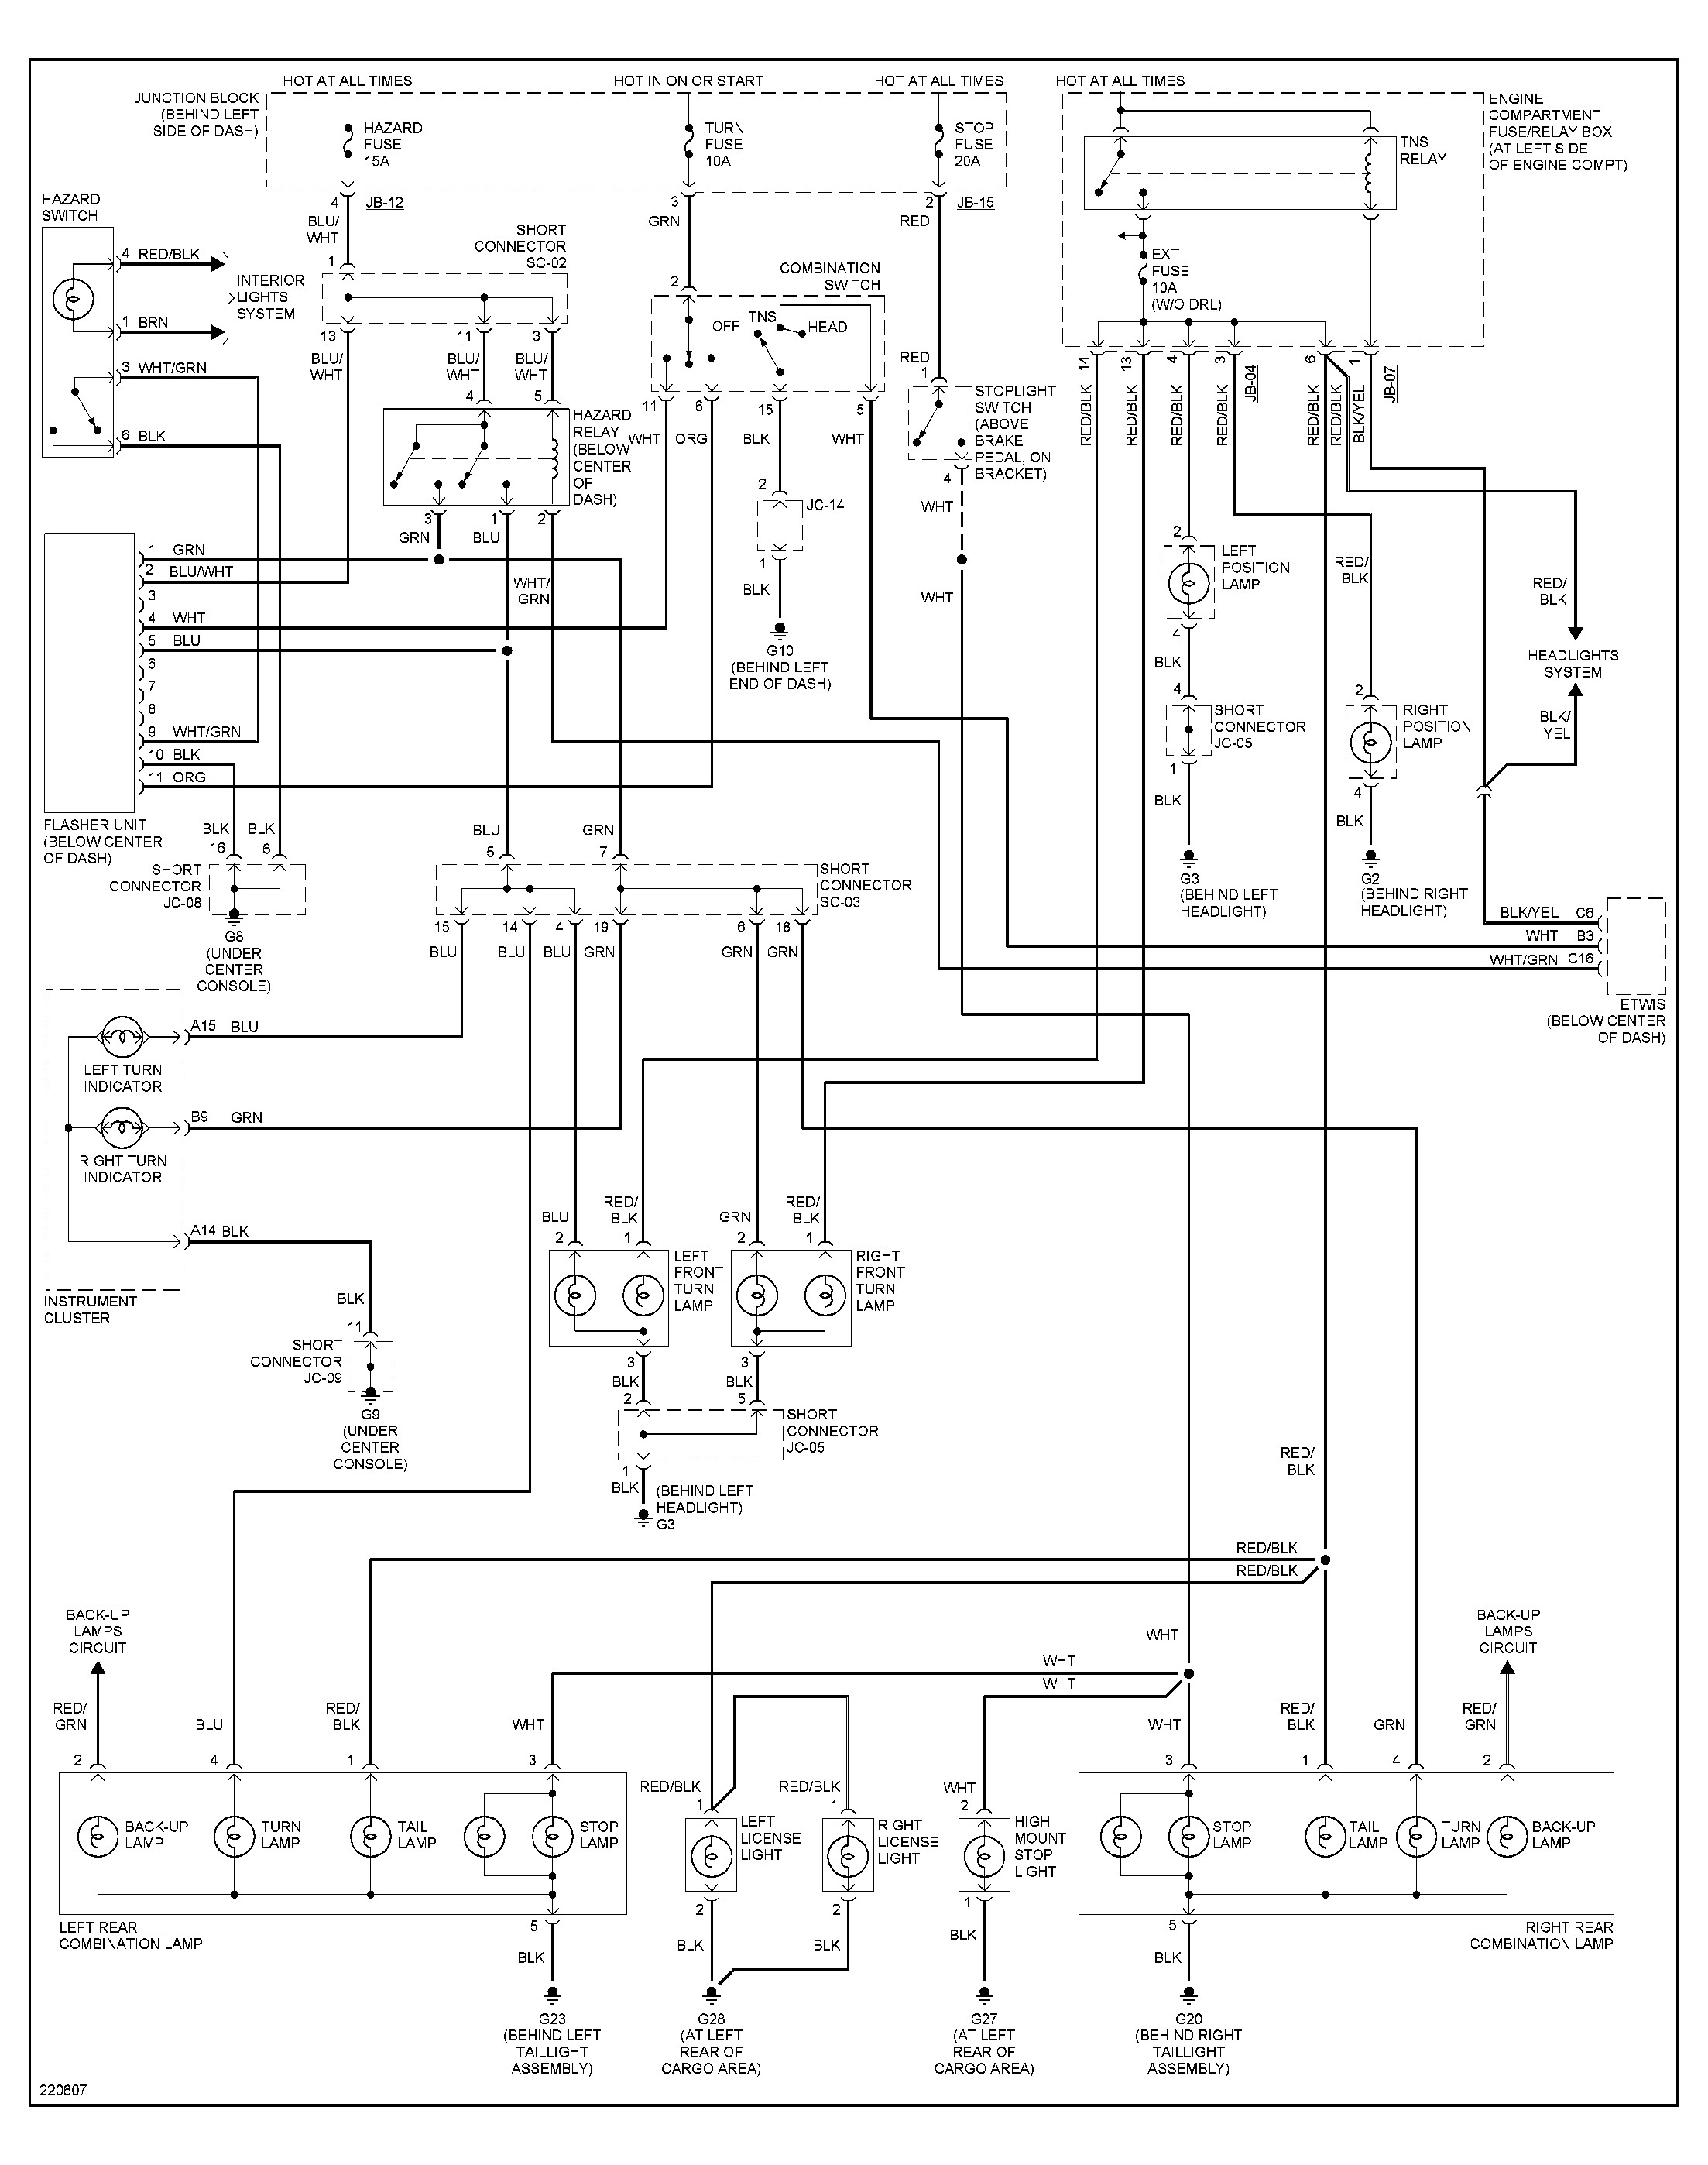 Diagram Of A Kia 3.5l Engine 2006 Kia sorento Tail Light Wiring Diagram Drac Wiring Of Diagram Of A Kia 3.5l Engine